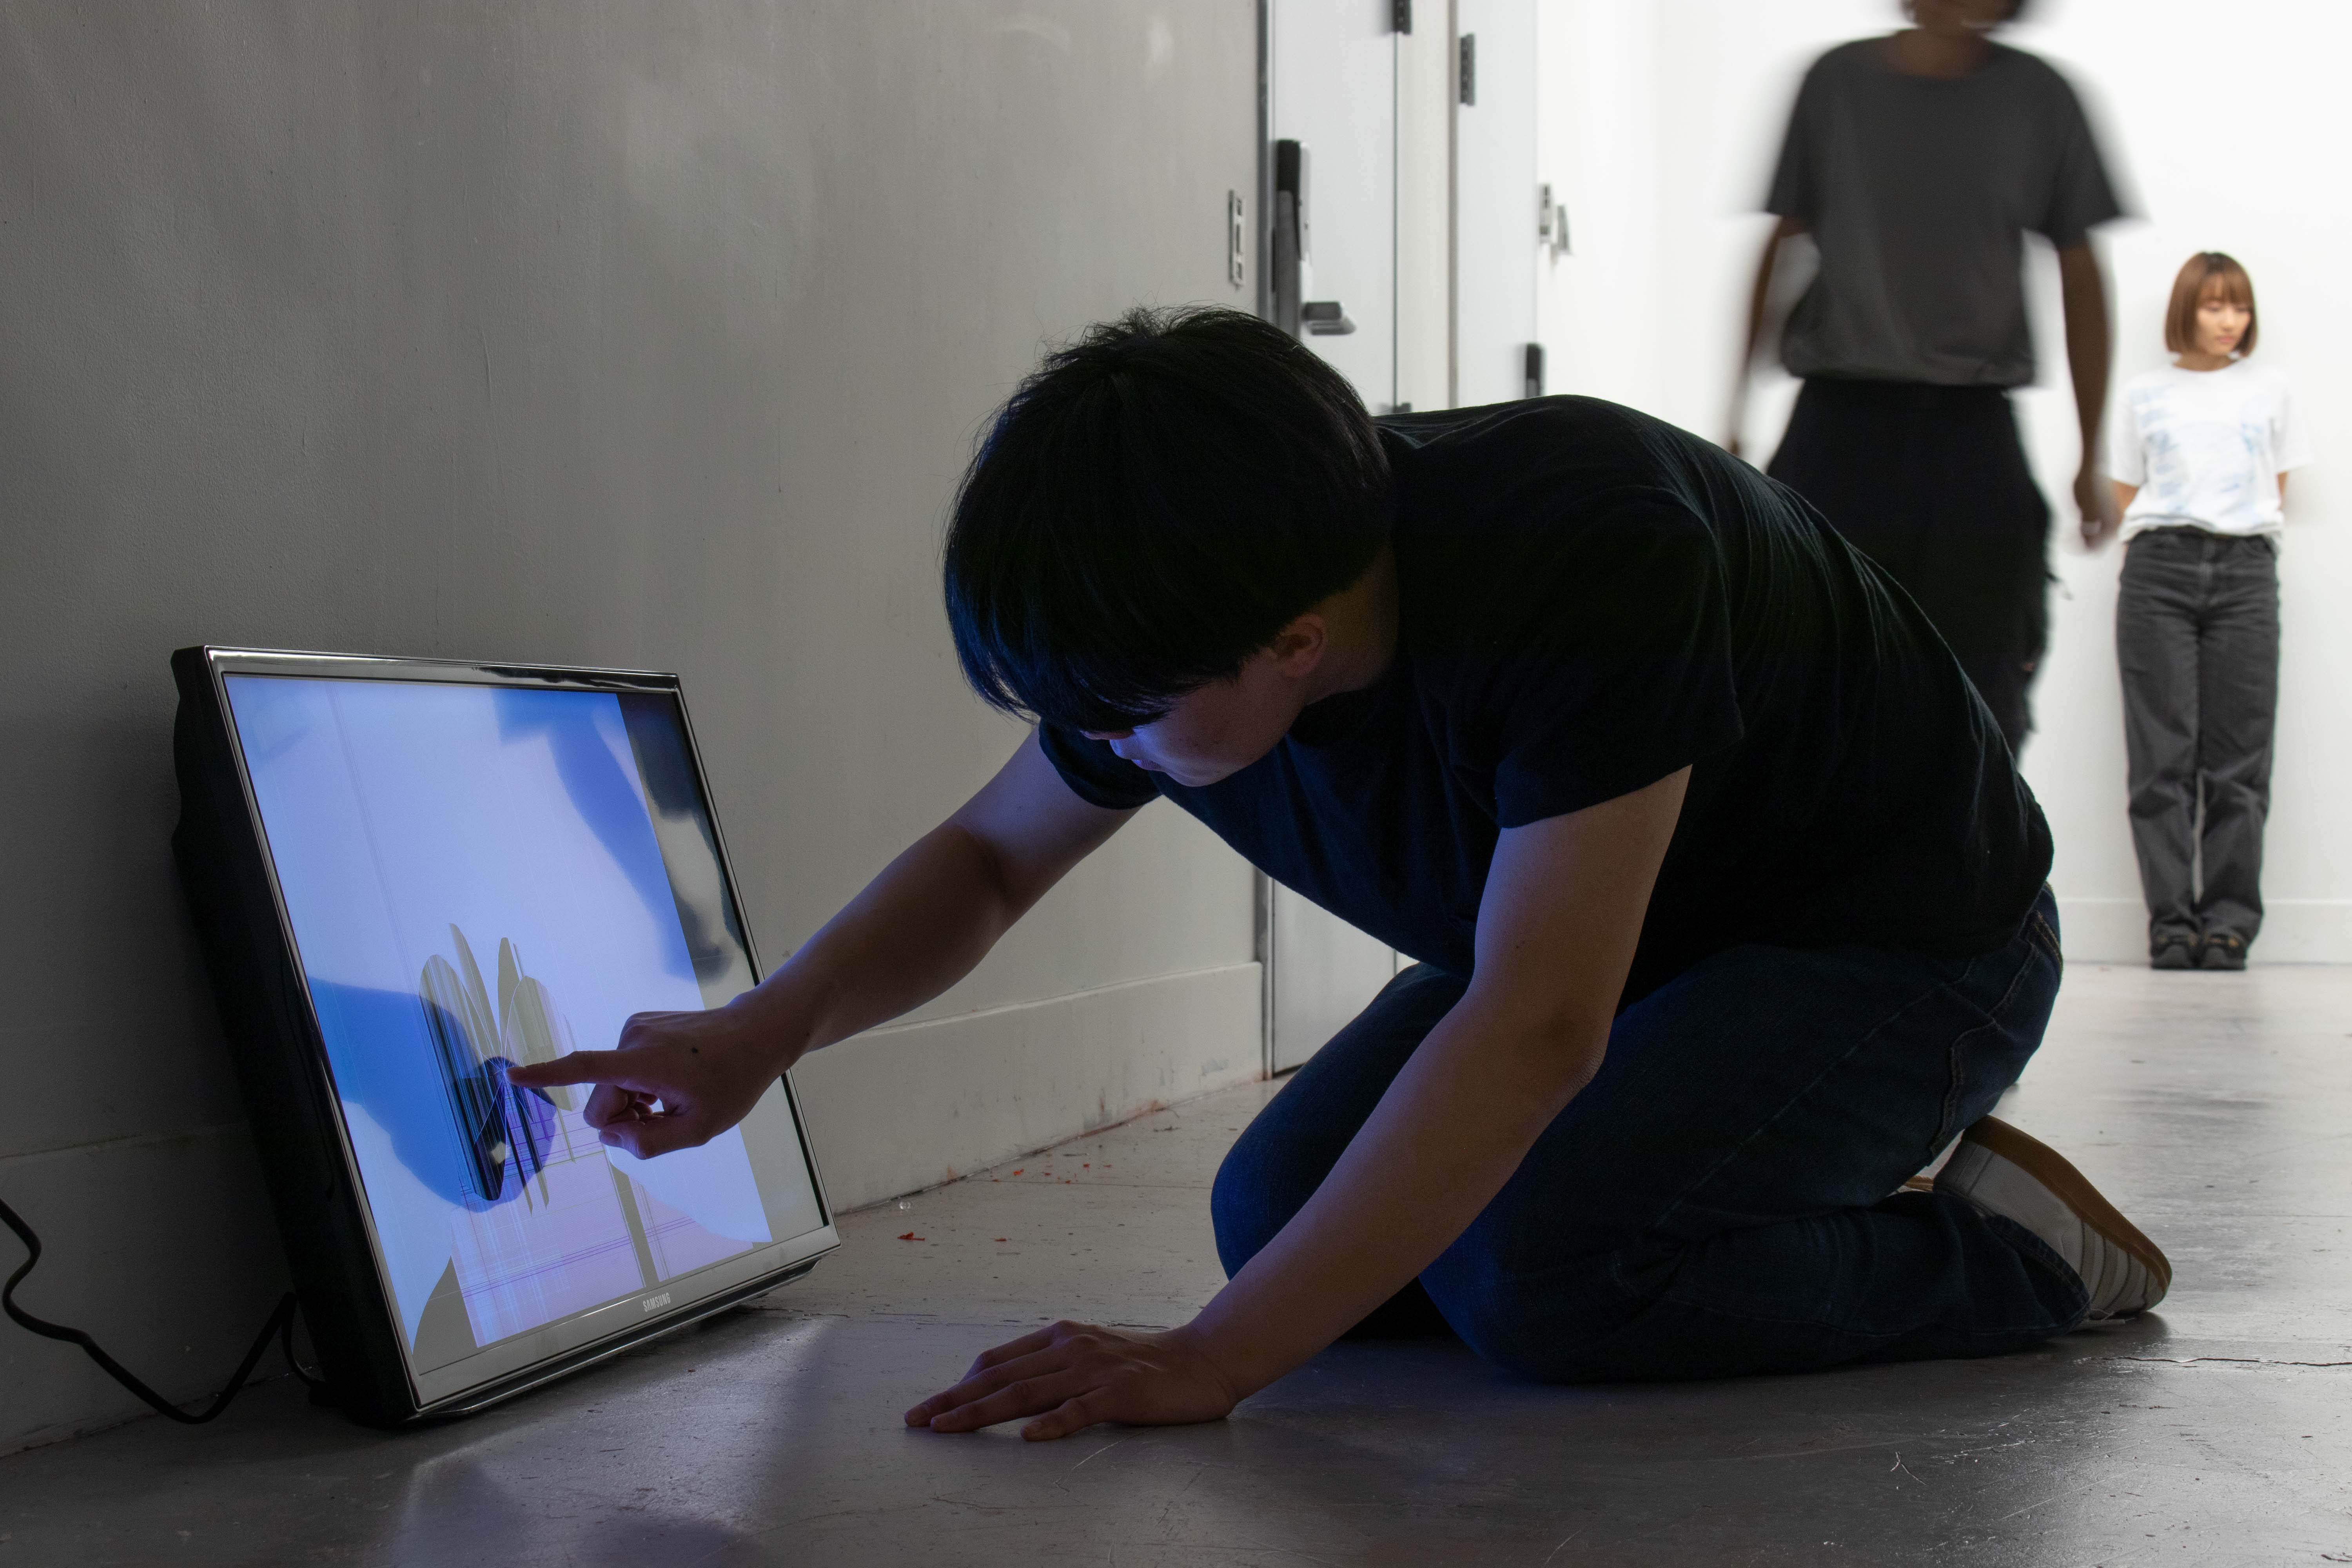 a young man touching a broken screen